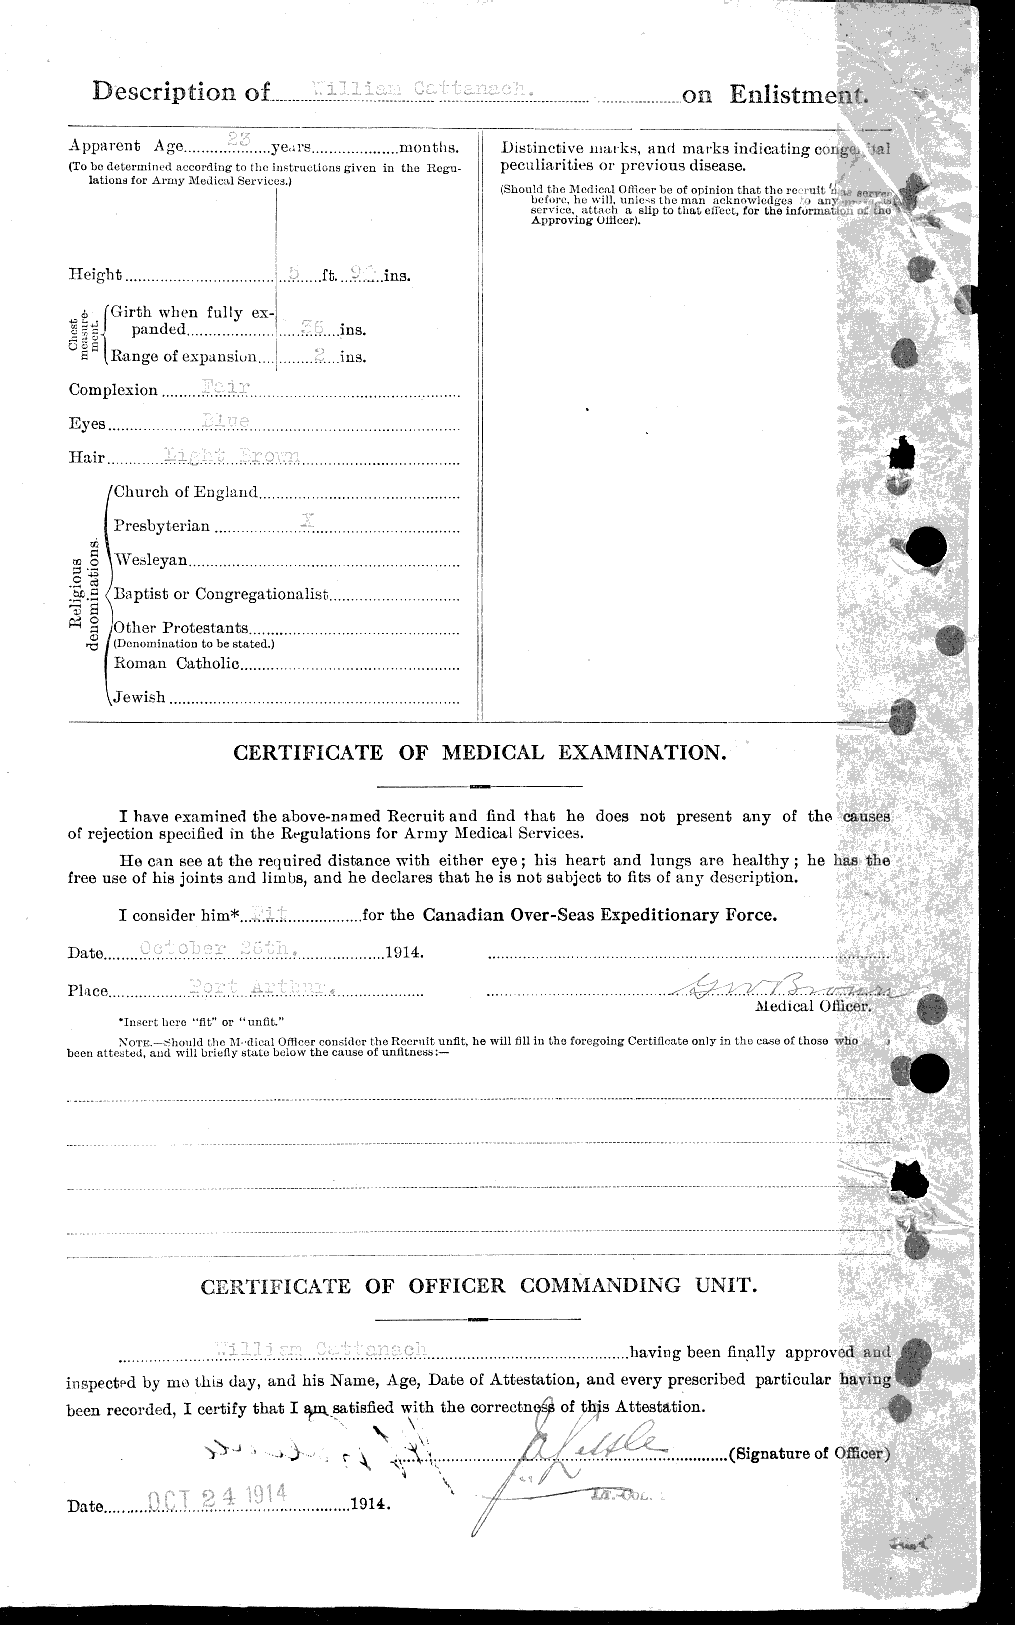 Dossiers du Personnel de la Première Guerre mondiale - CEC 013314b